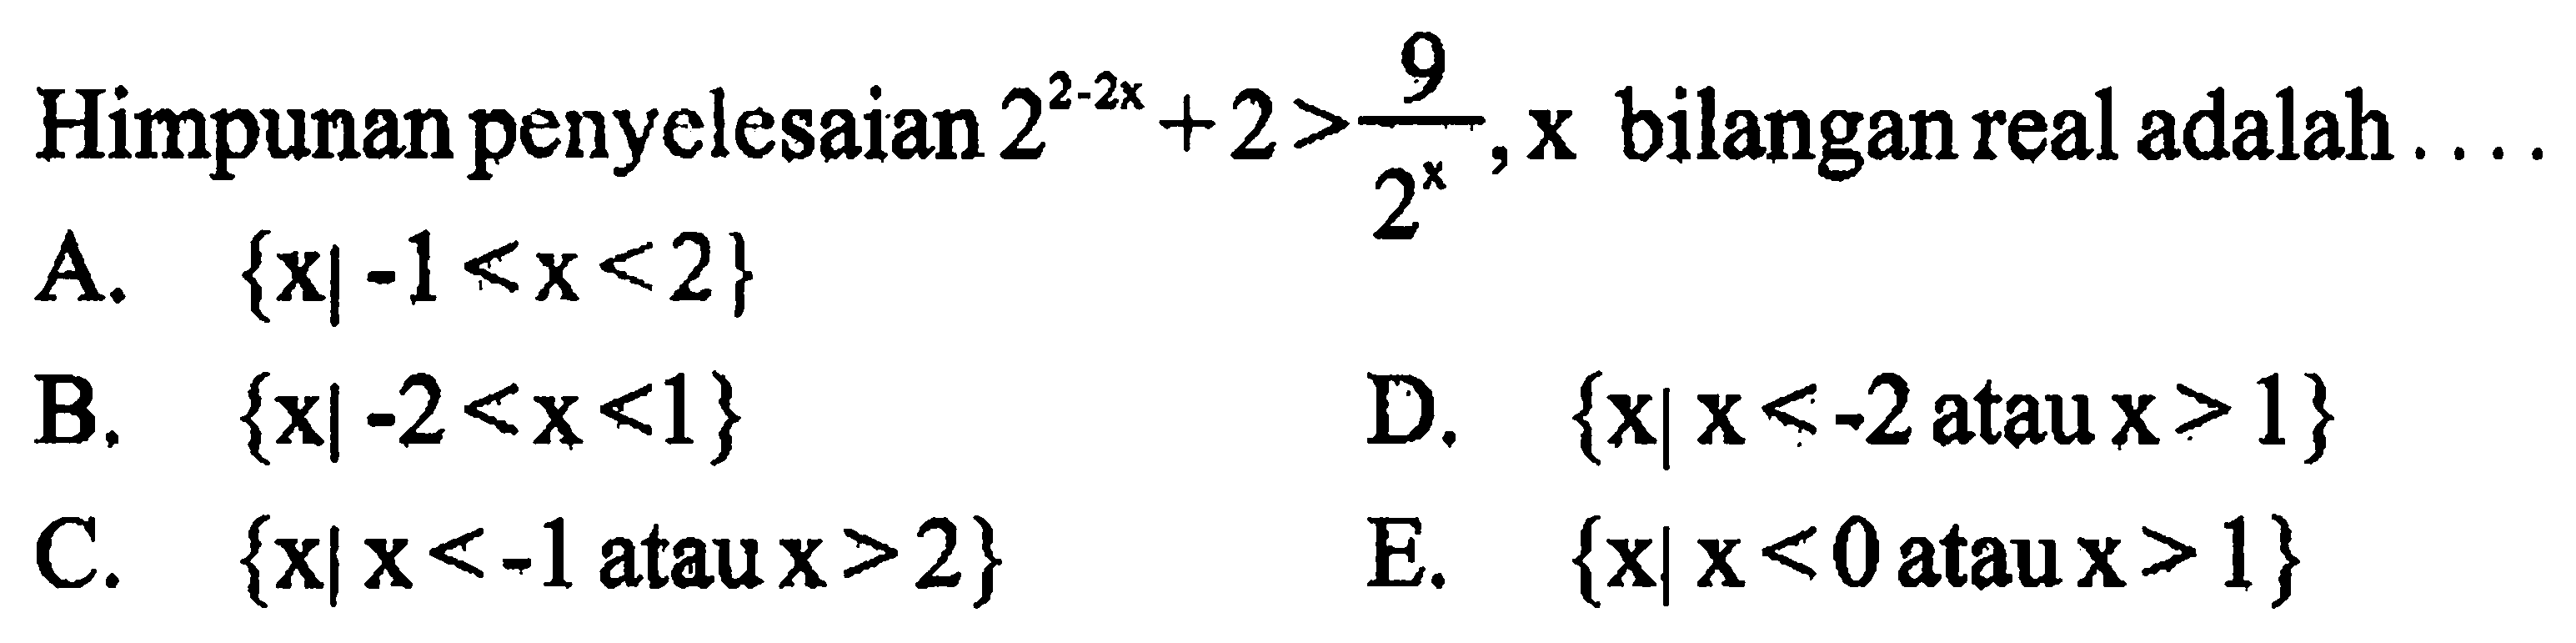 Himpunan penyelesaian 2^-2x +2>9/2^x, x bilangan real adalah